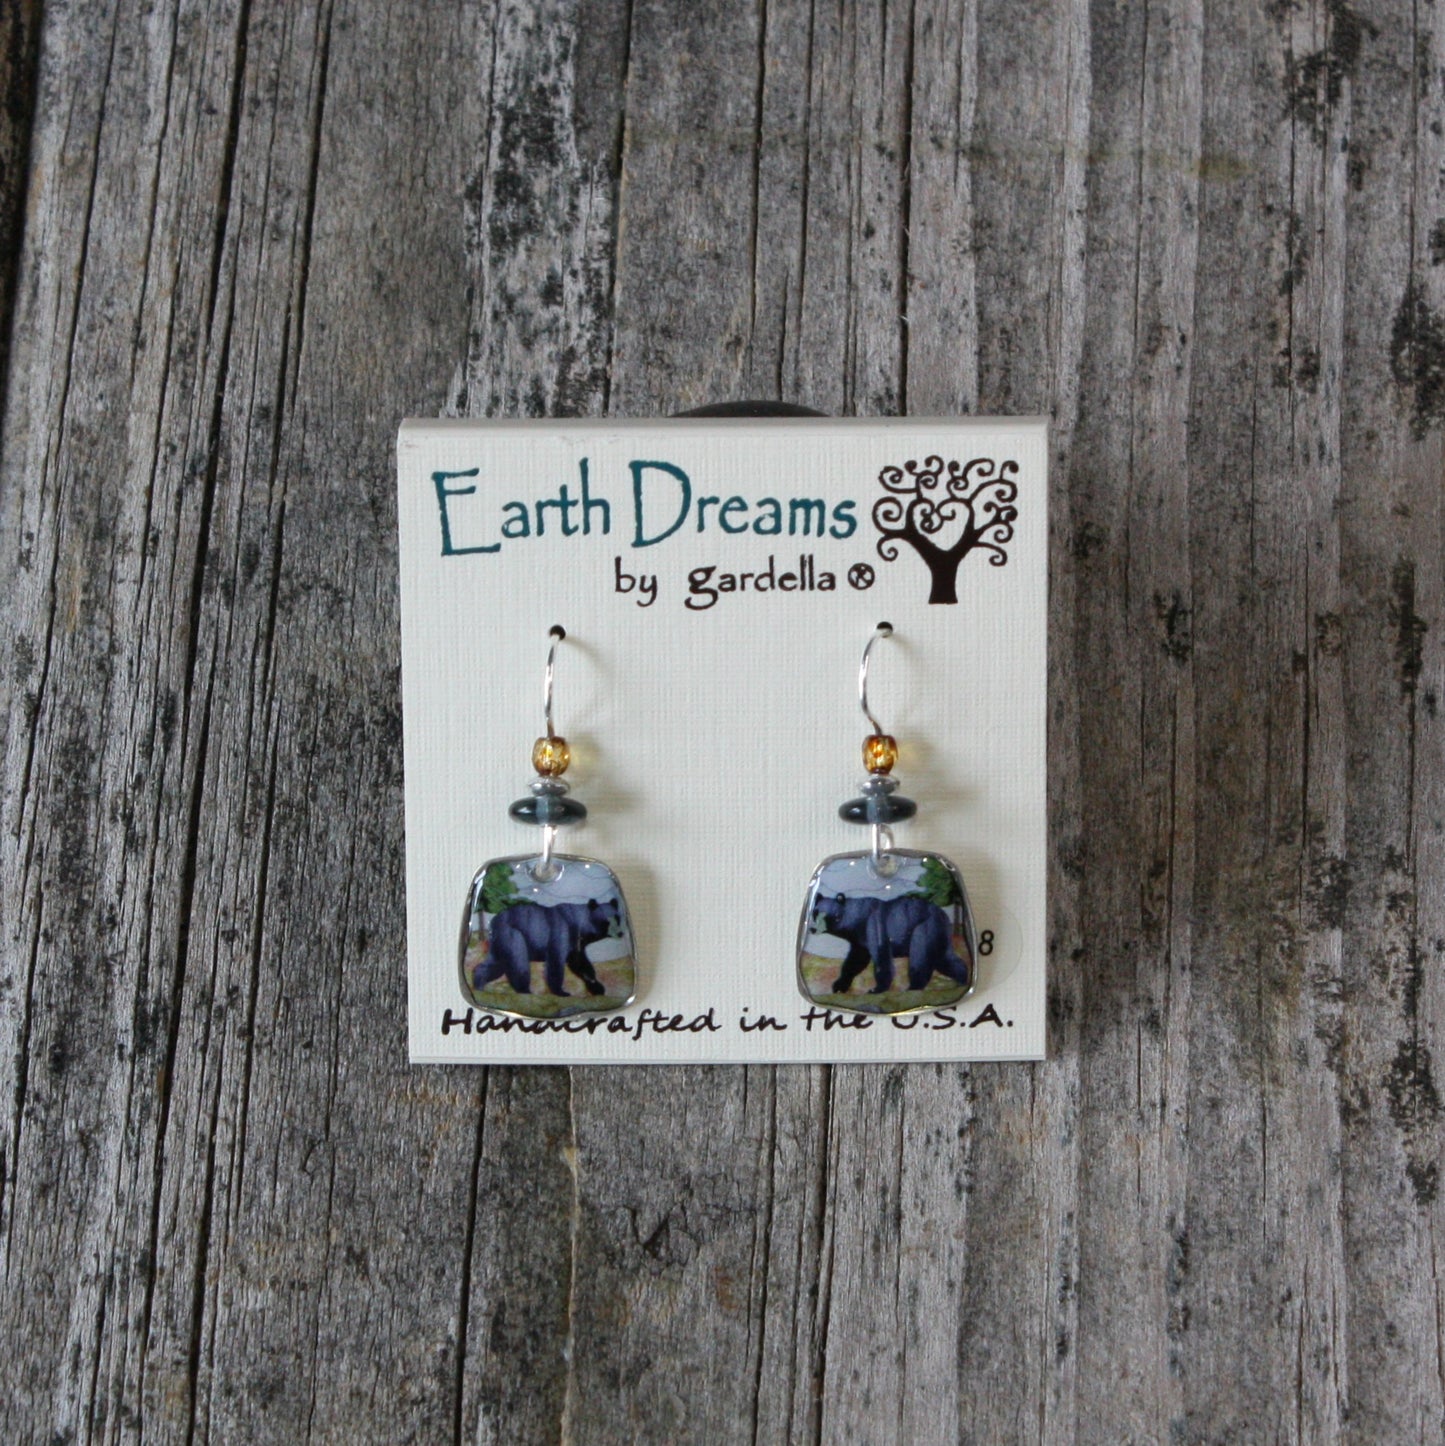 Black Bear with bead earrings by Earth Dreams Jewelry